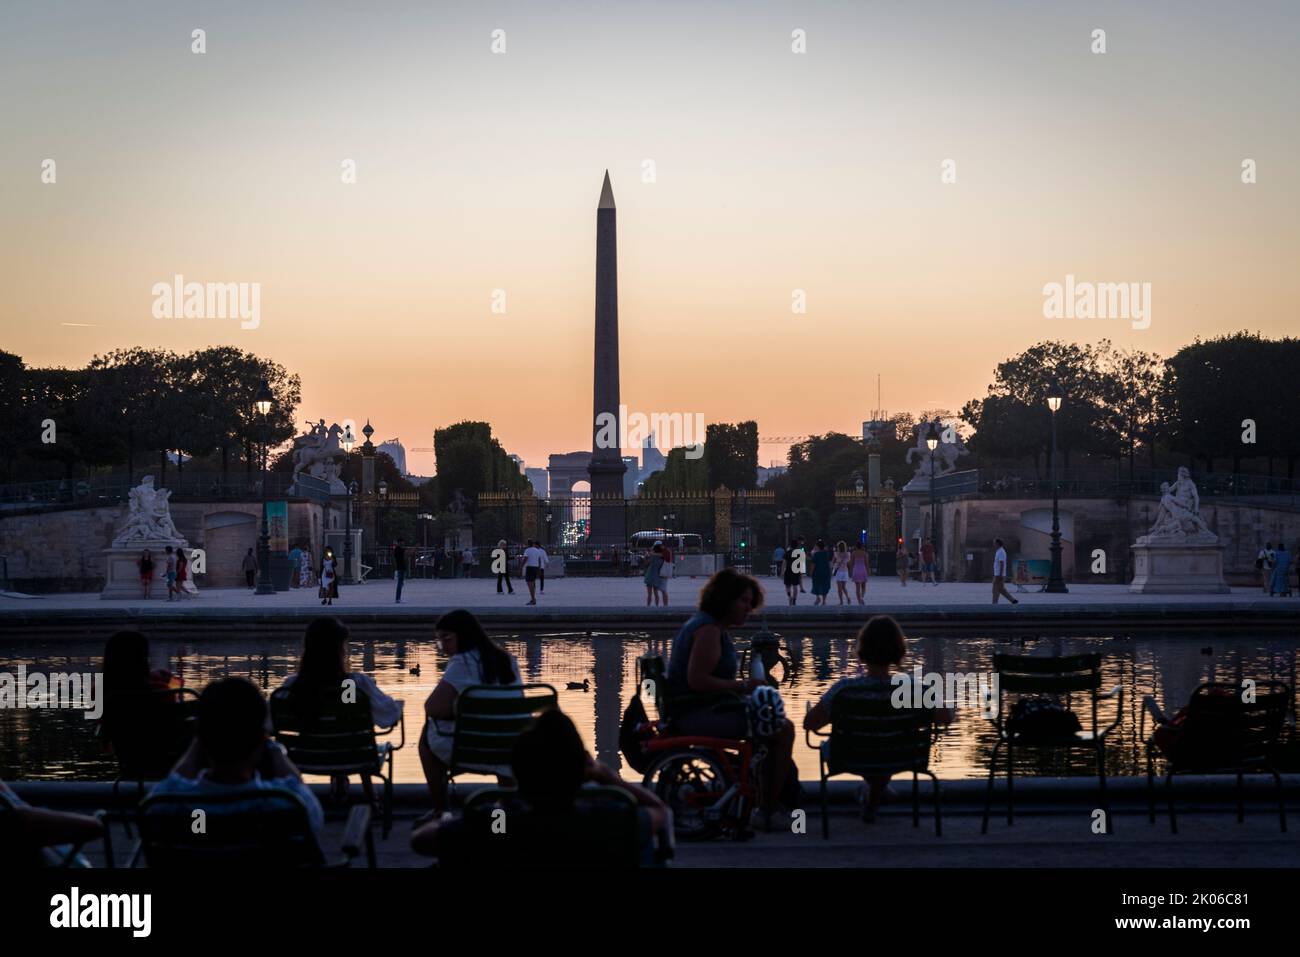 Bassin ottogonale, stagno ottogonale e obelisco egiziano al tramonto, Jardin des Tuileries, Parigi, Francia Foto Stock